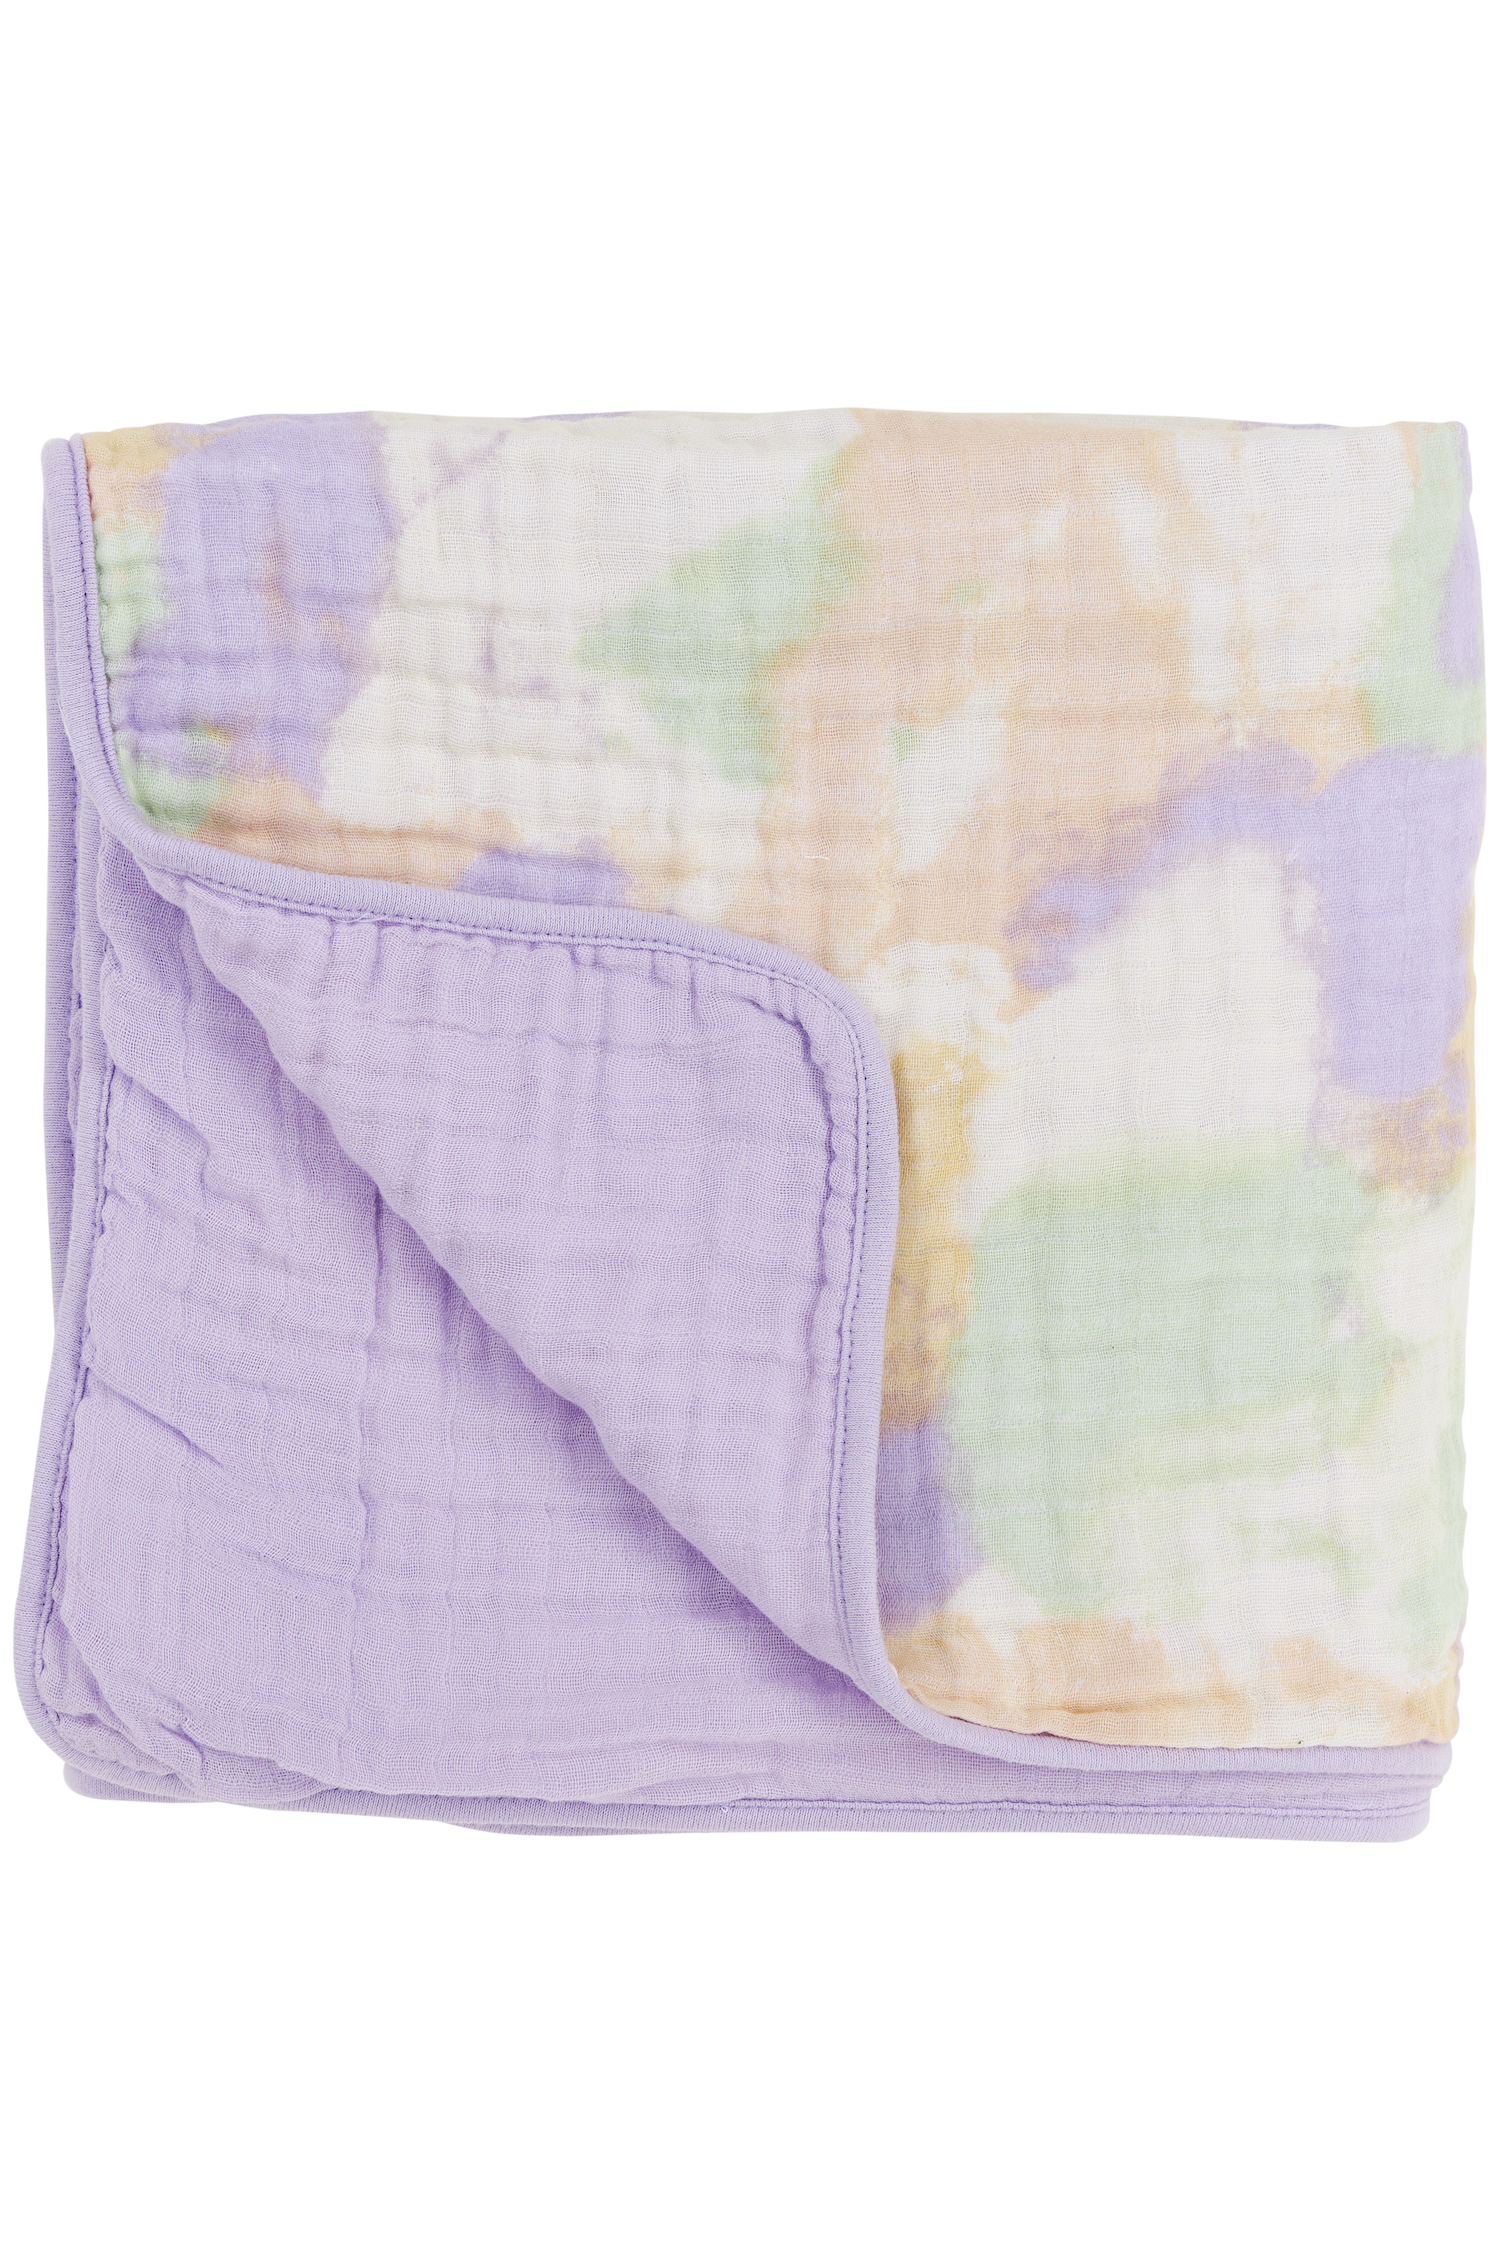 Muslin Multi Cloth Tie-dye - Soft Lilac - 120x120cm